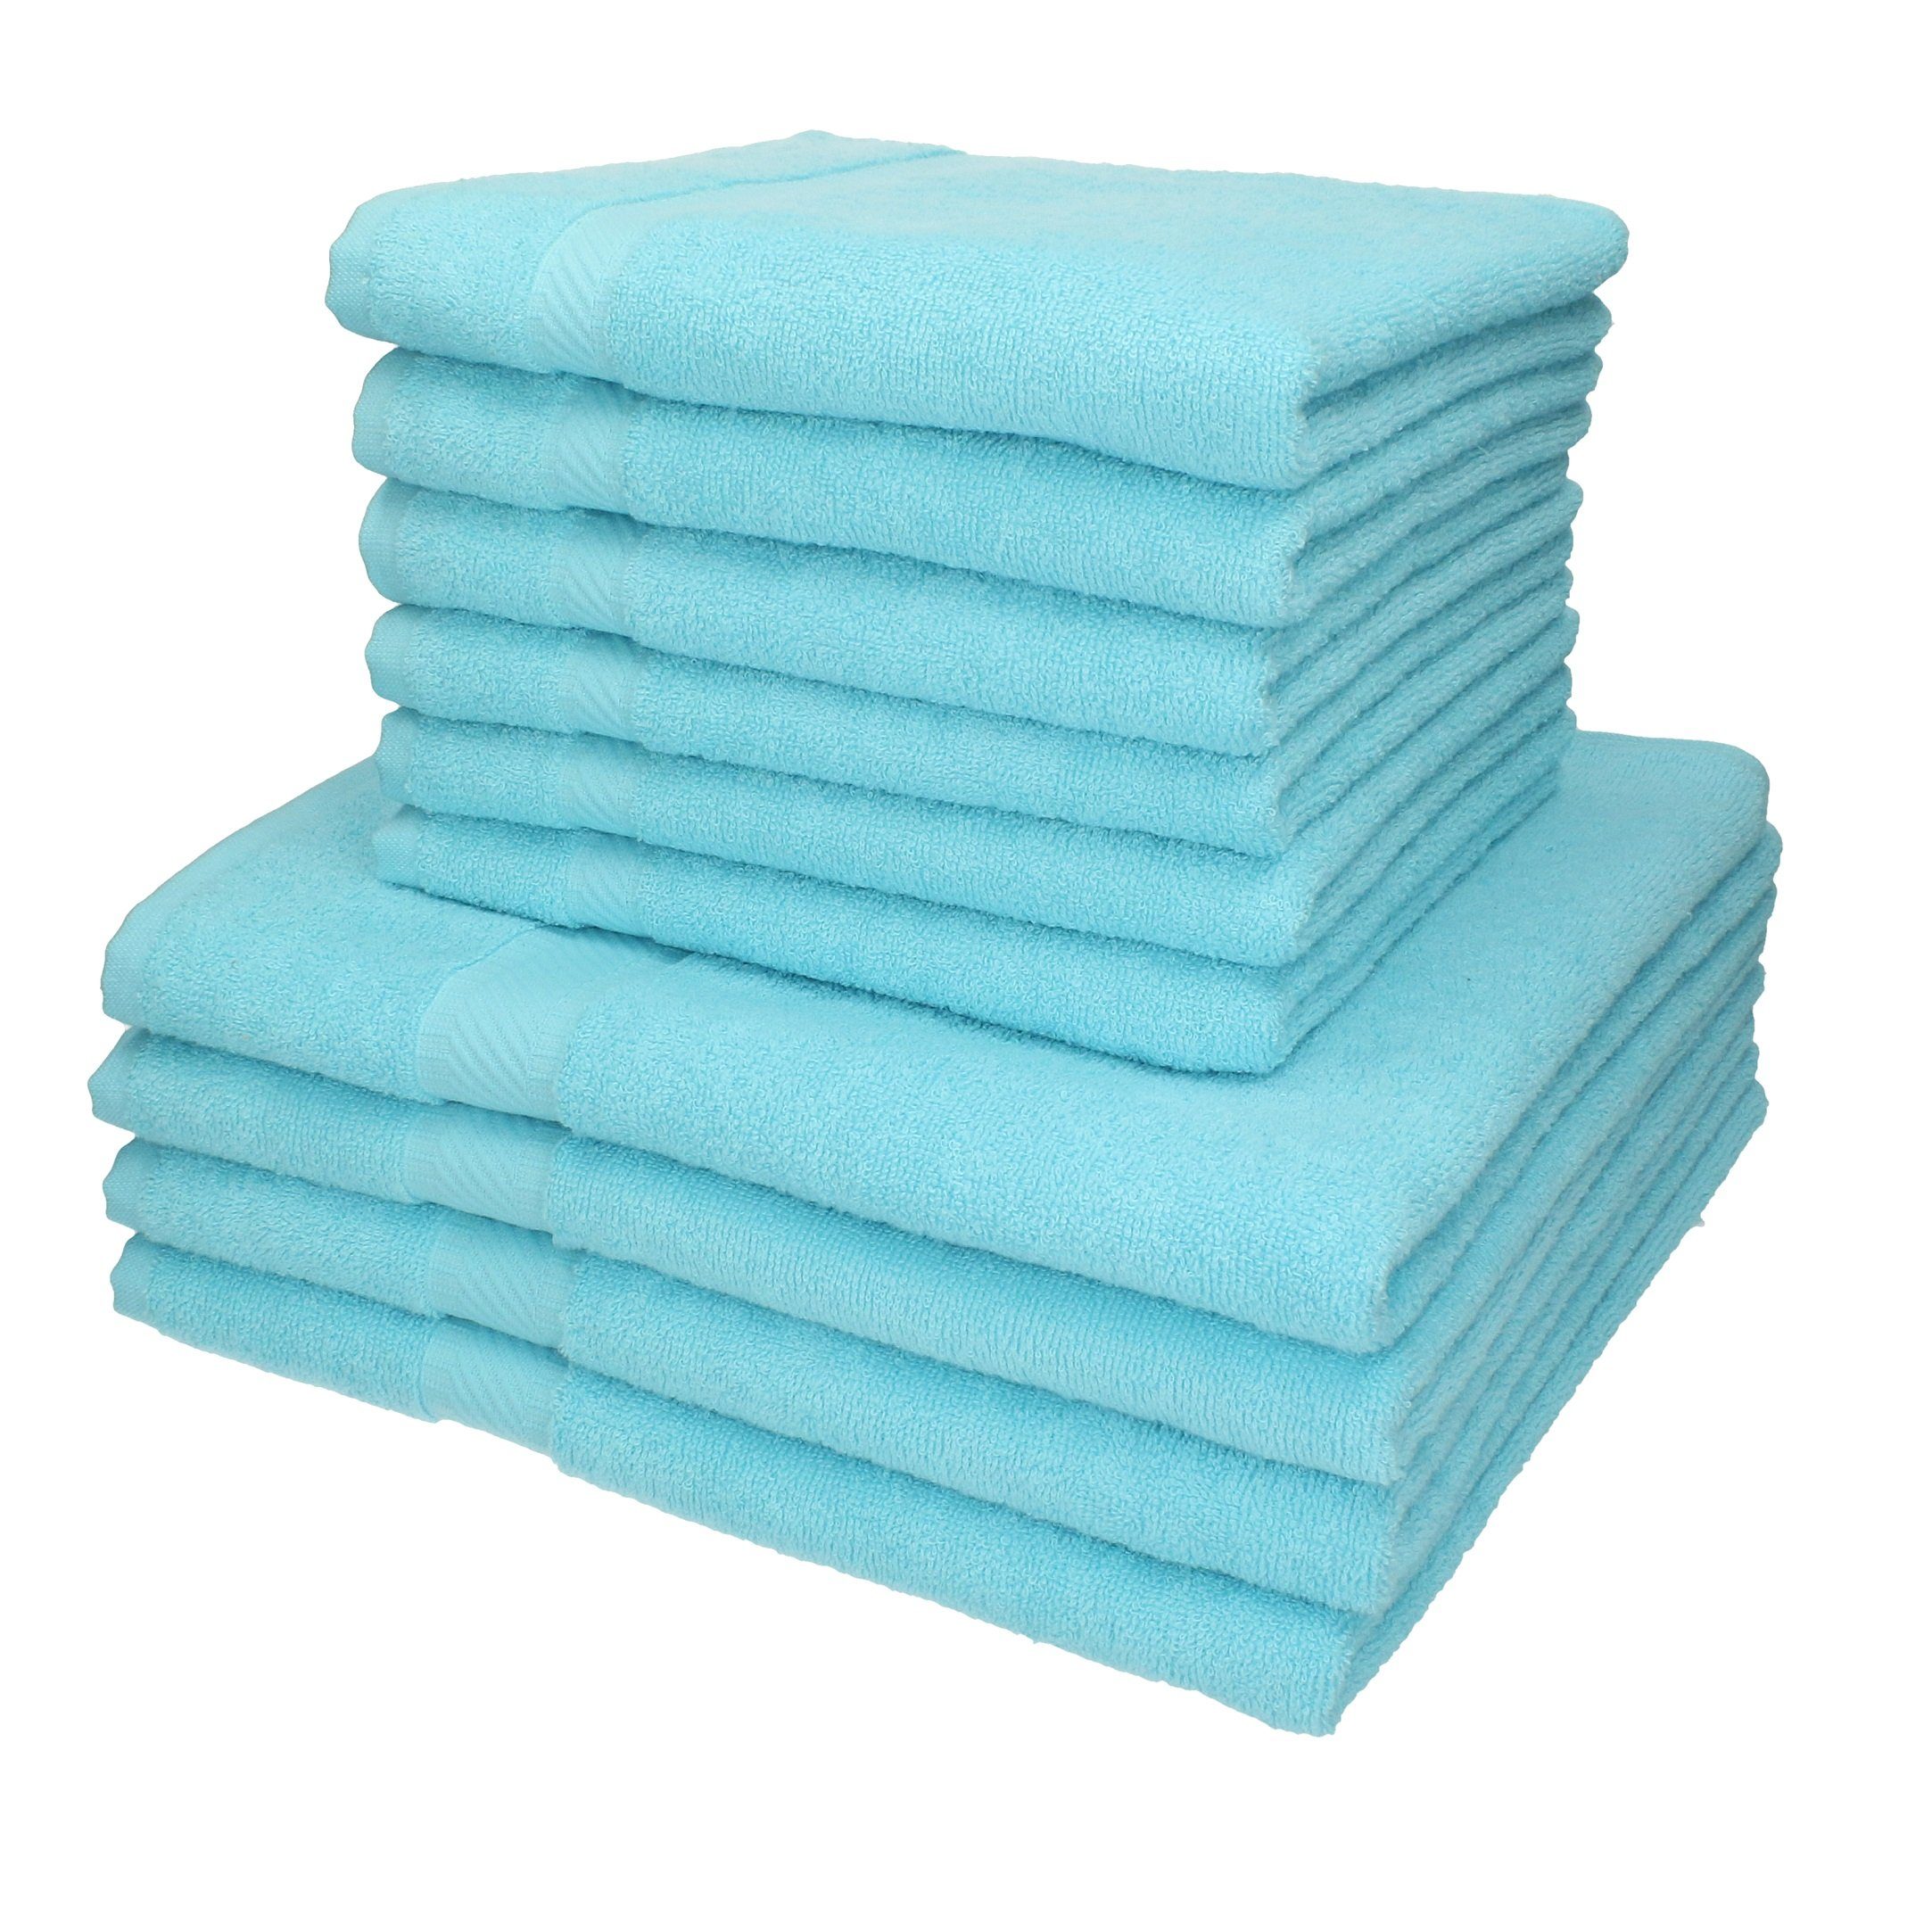 Betz Handtuch Set 10-TLG. Handtuch-Set Palermo Farbe türkis, 100% Baumwolle